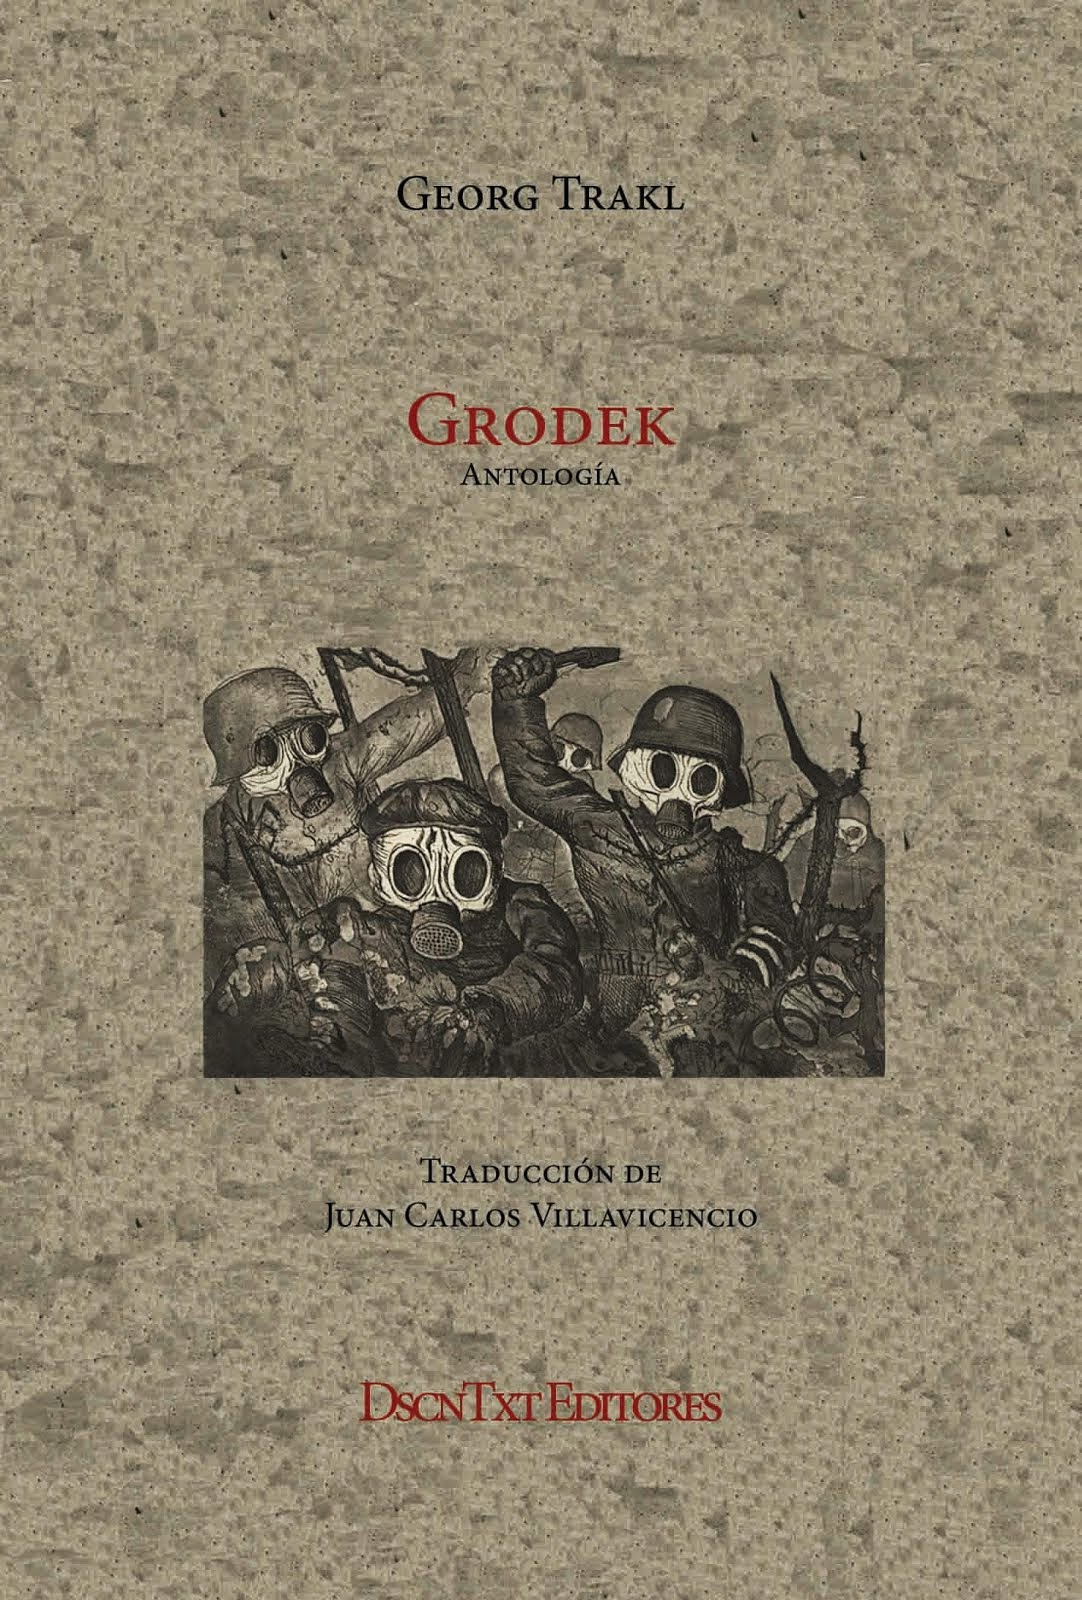 Grodek, de Georg Trakl. Traducción de Juan Carlos Villavicencio